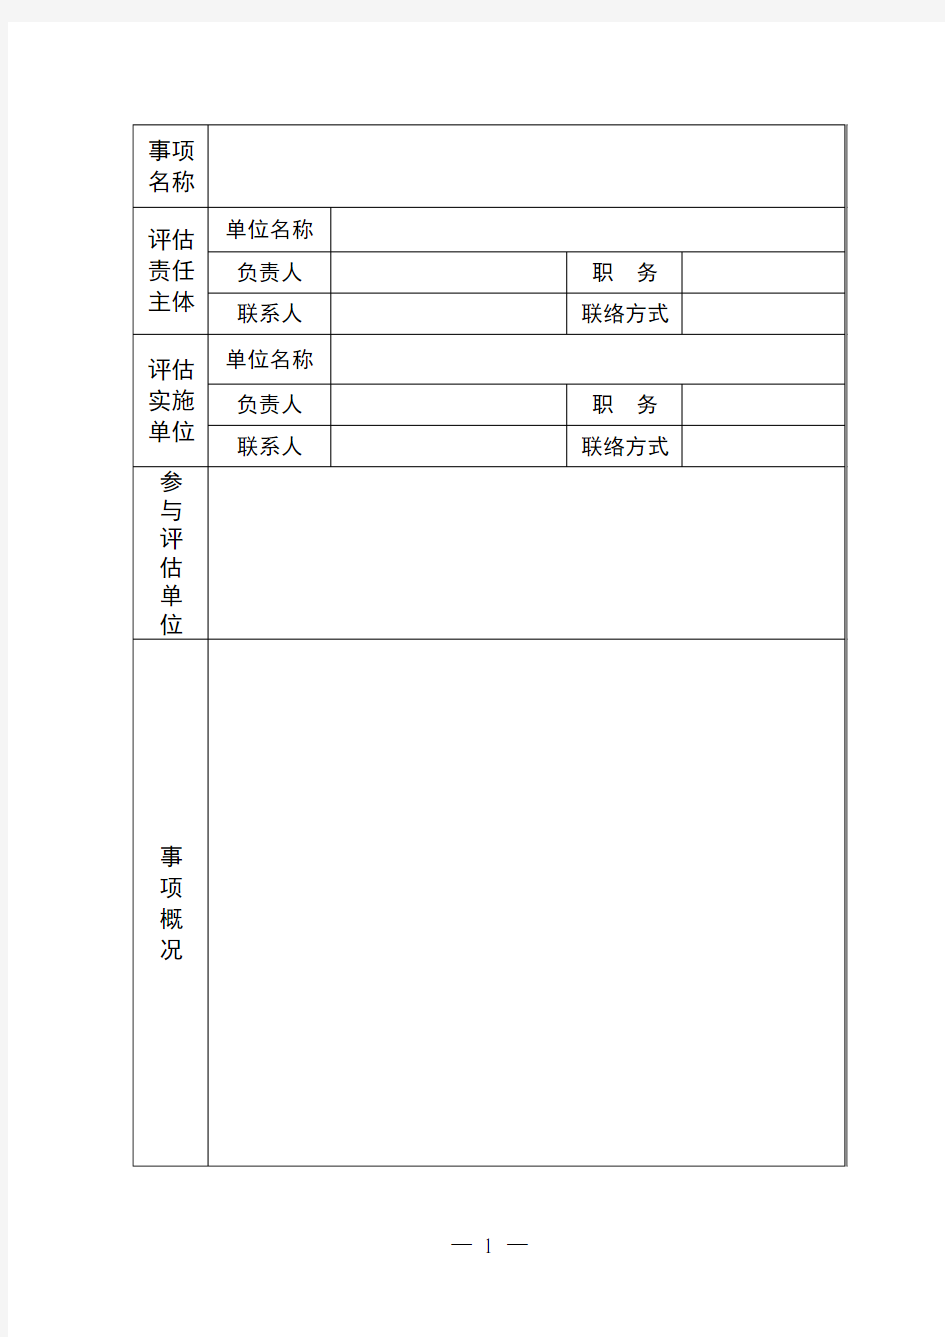 江苏省社会稳定风险评估评审报告表